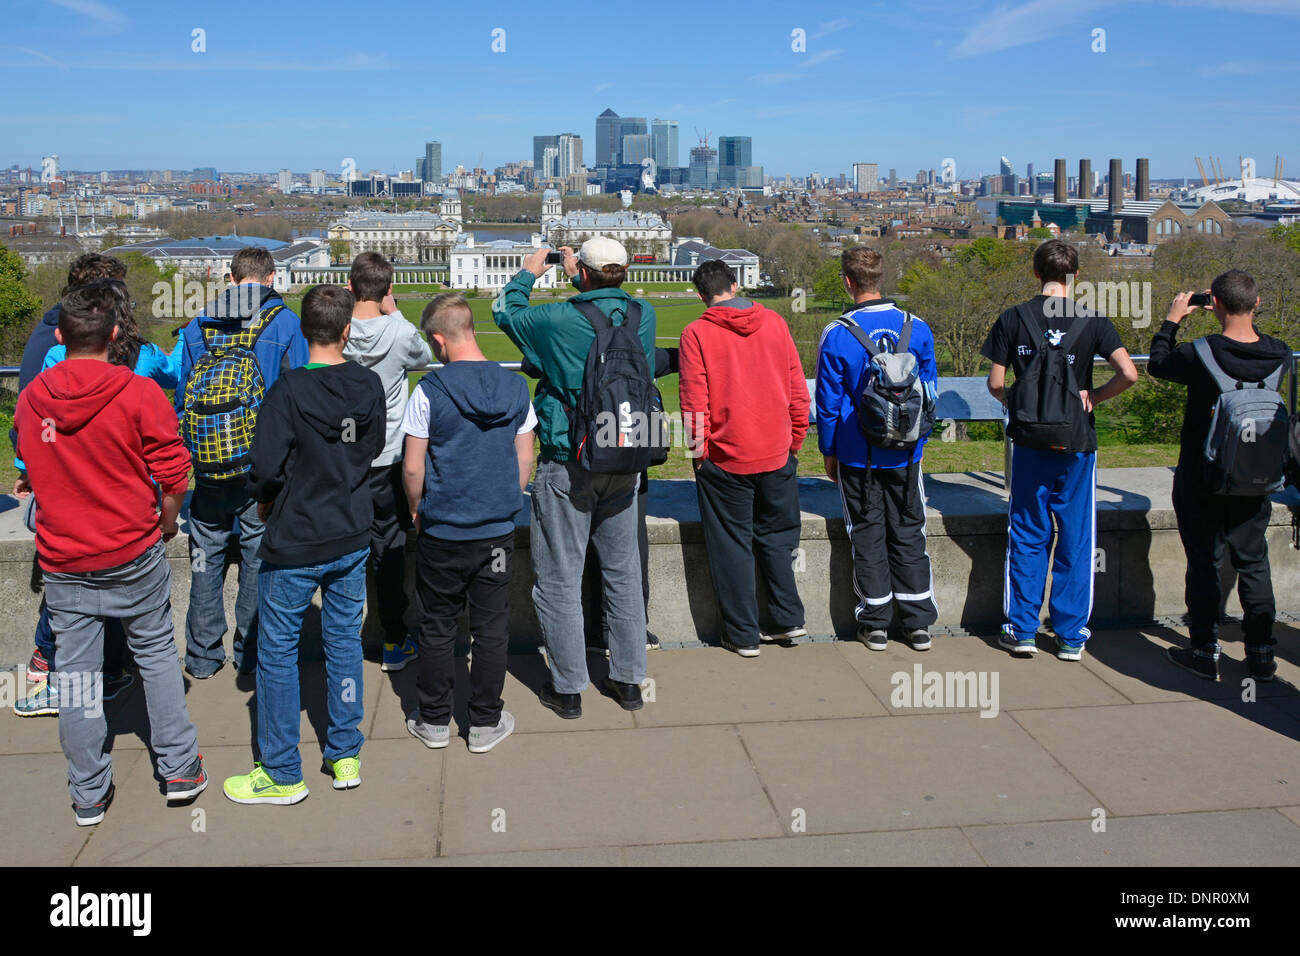 Gruppe von Jugendlichen Jungen Studenten auf Bildungsreise Greenwich Park & Hilltop Observatory mit Blick auf die Skyline von Canary Wharf London, England, Großbritannien Stockfoto